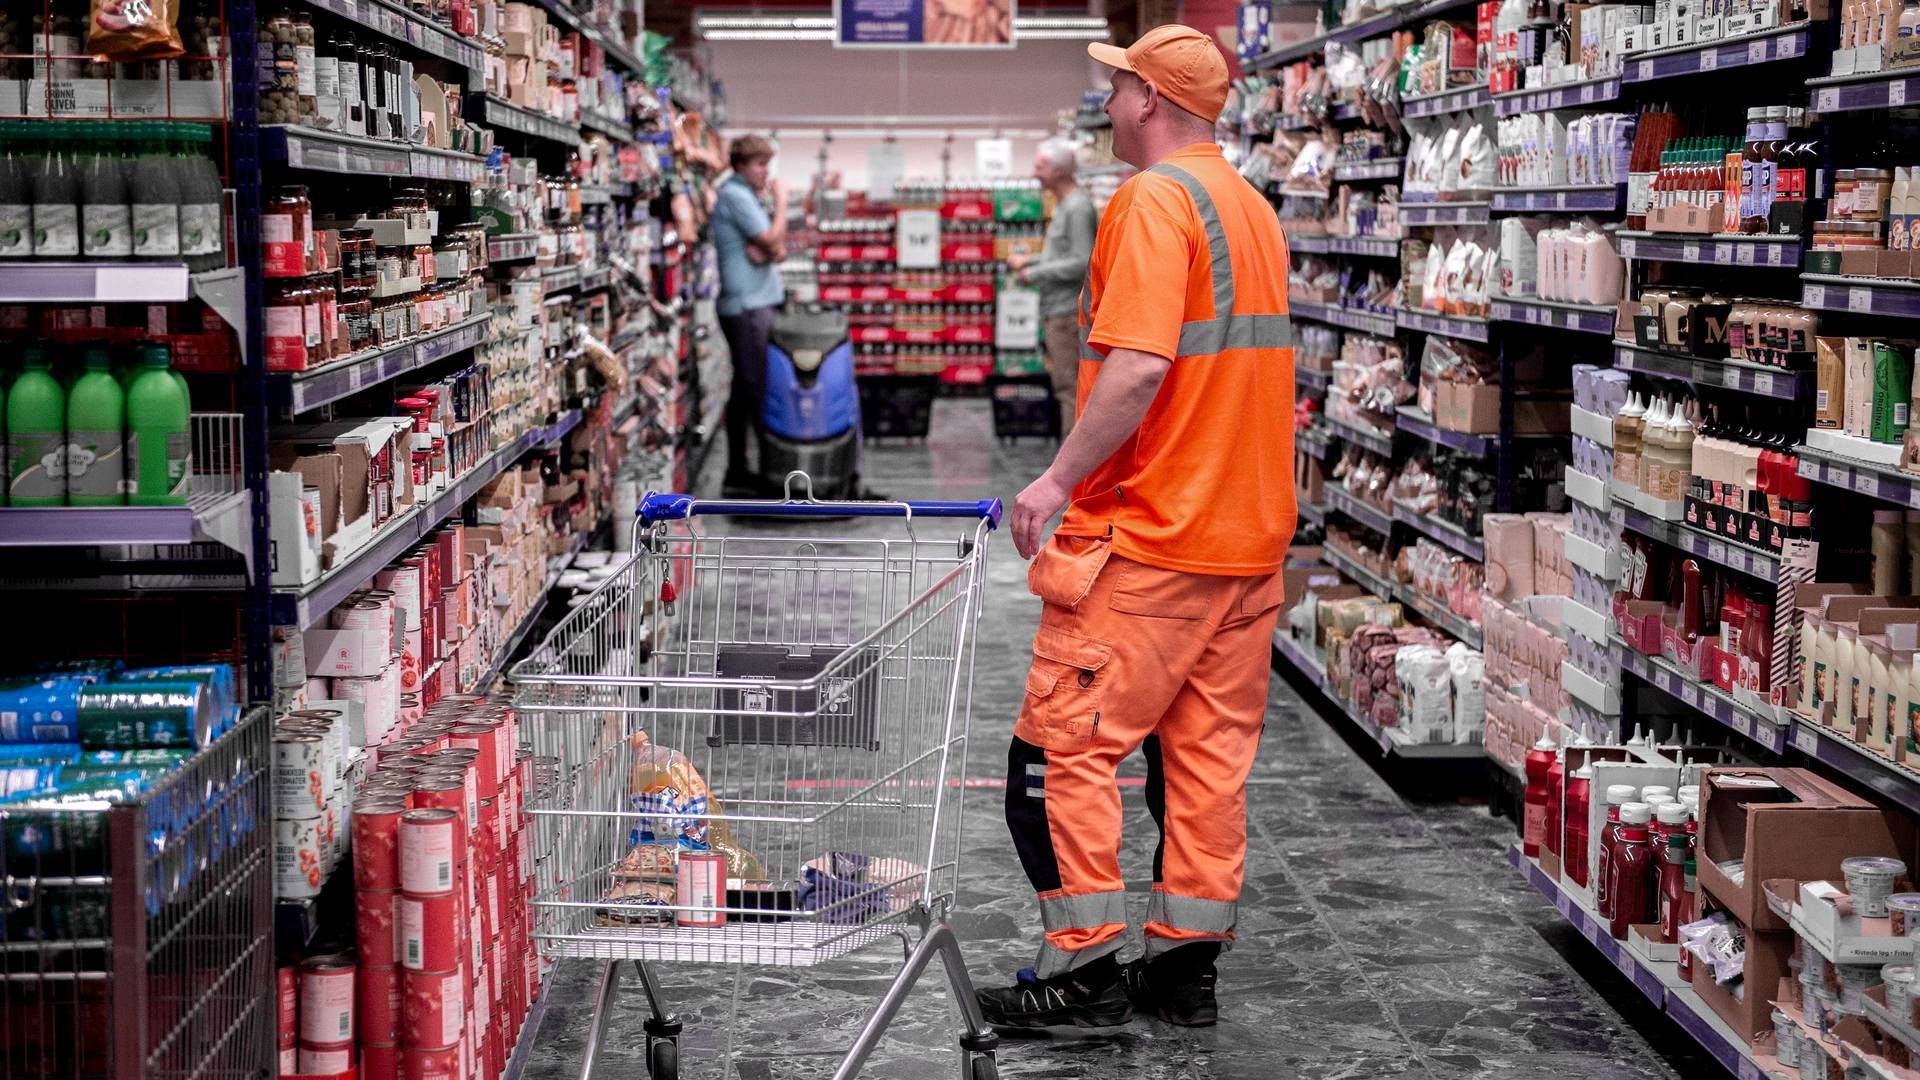 Det er ikke alle besøgende i supermarkederne, der er lige gode til at fylde indkøbsvognen og betale for sine varer. Antallet af anmeldte butikstyverier stiger fortsat støt, og det rammer især dagligvarebranchen. (Arkivfoto.) | Foto: Annika Byrde